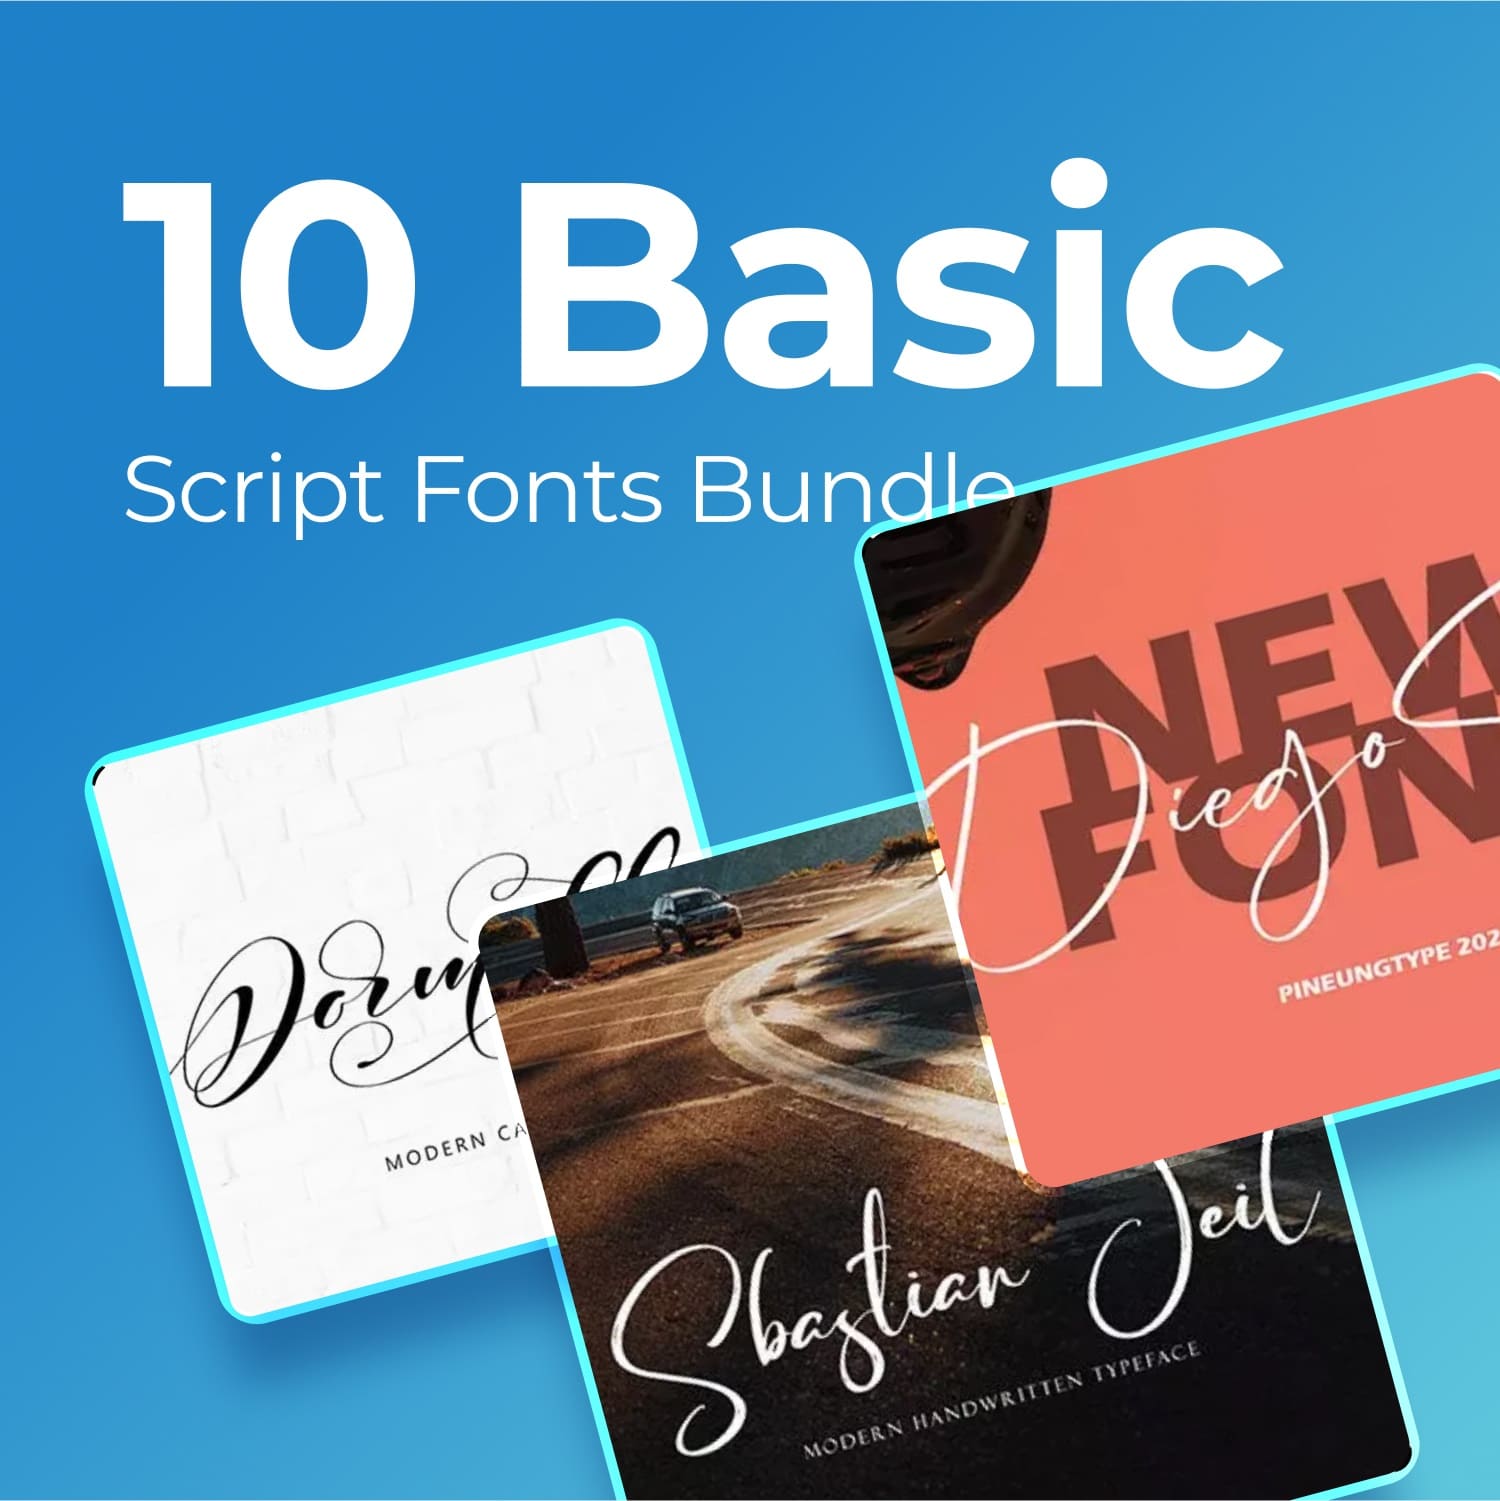 Basic script fonts bundle main cover.